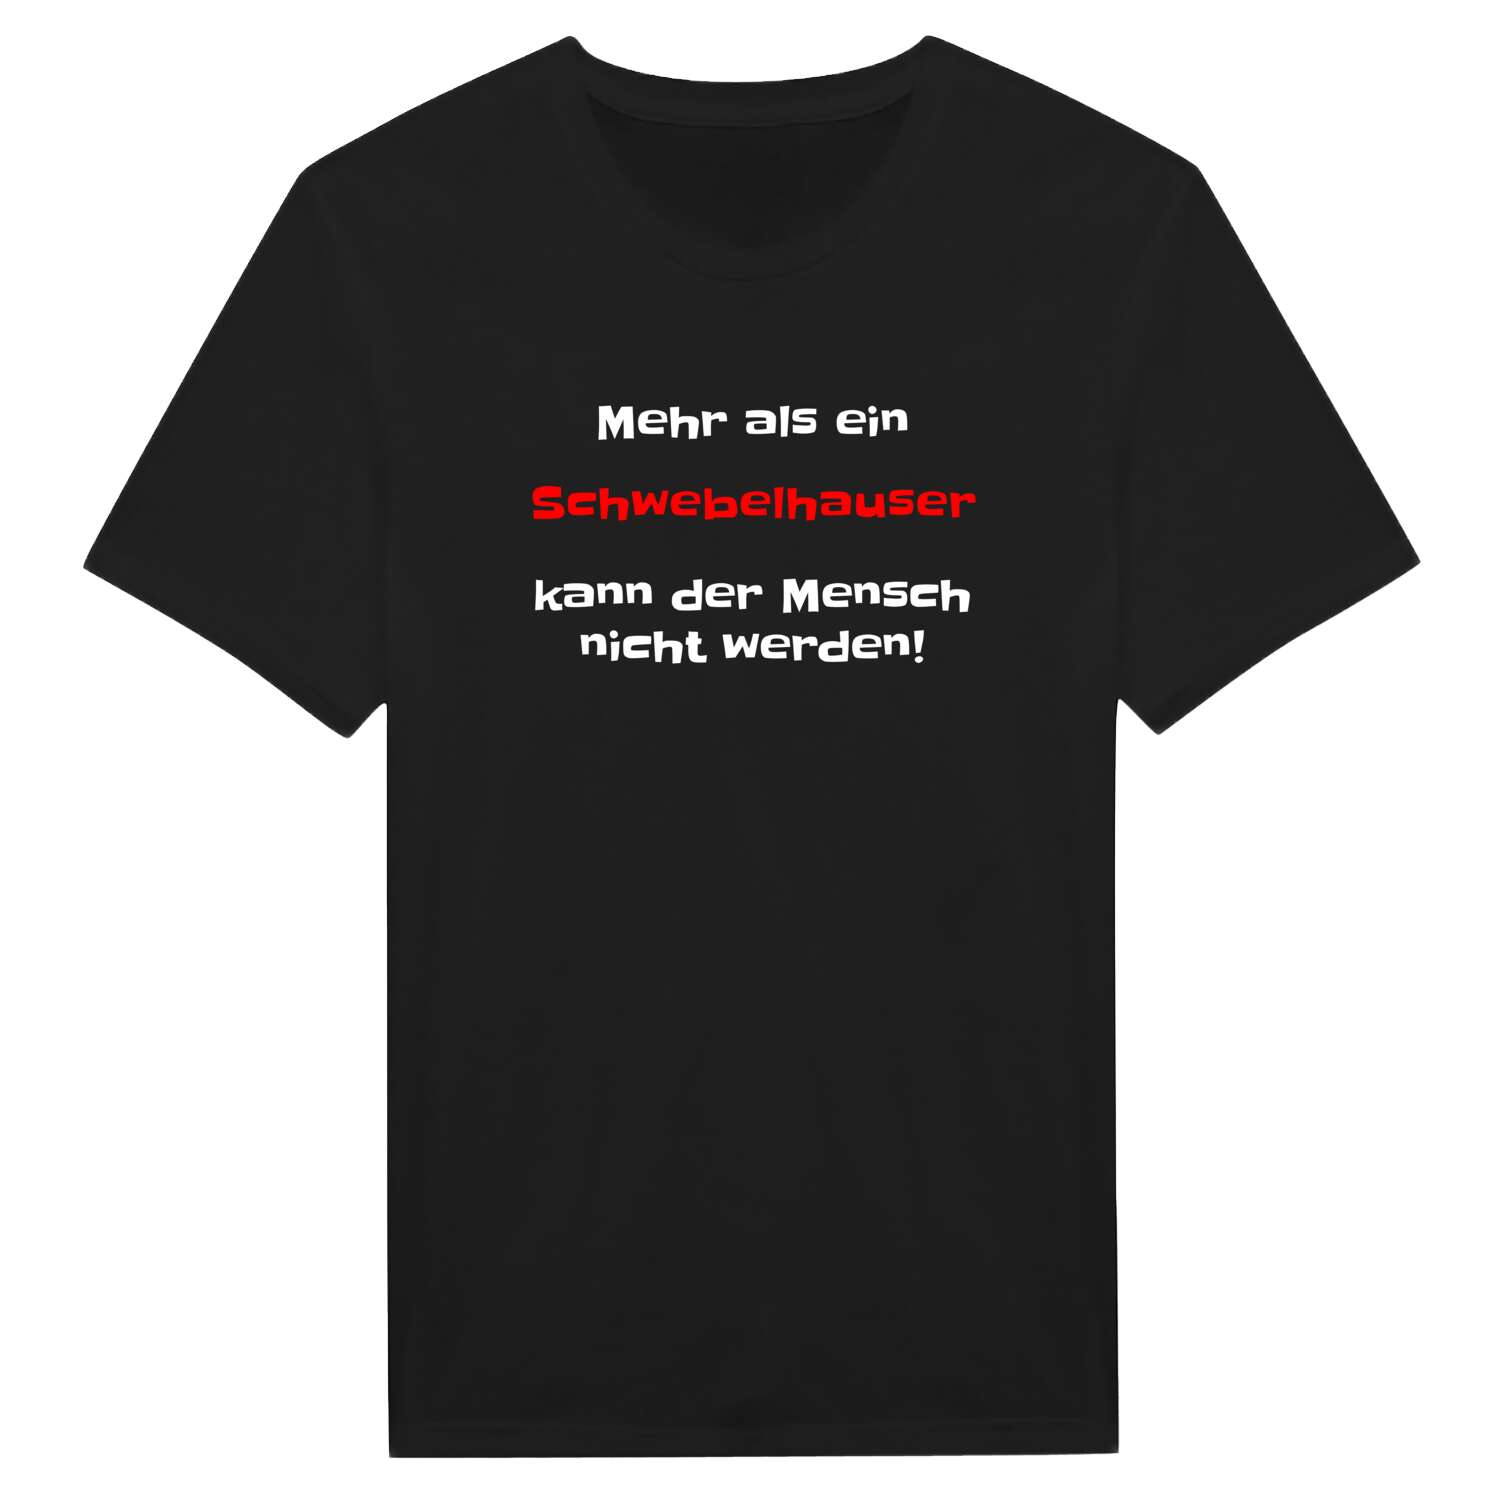 Schwebelhaus T-Shirt »Mehr als ein«